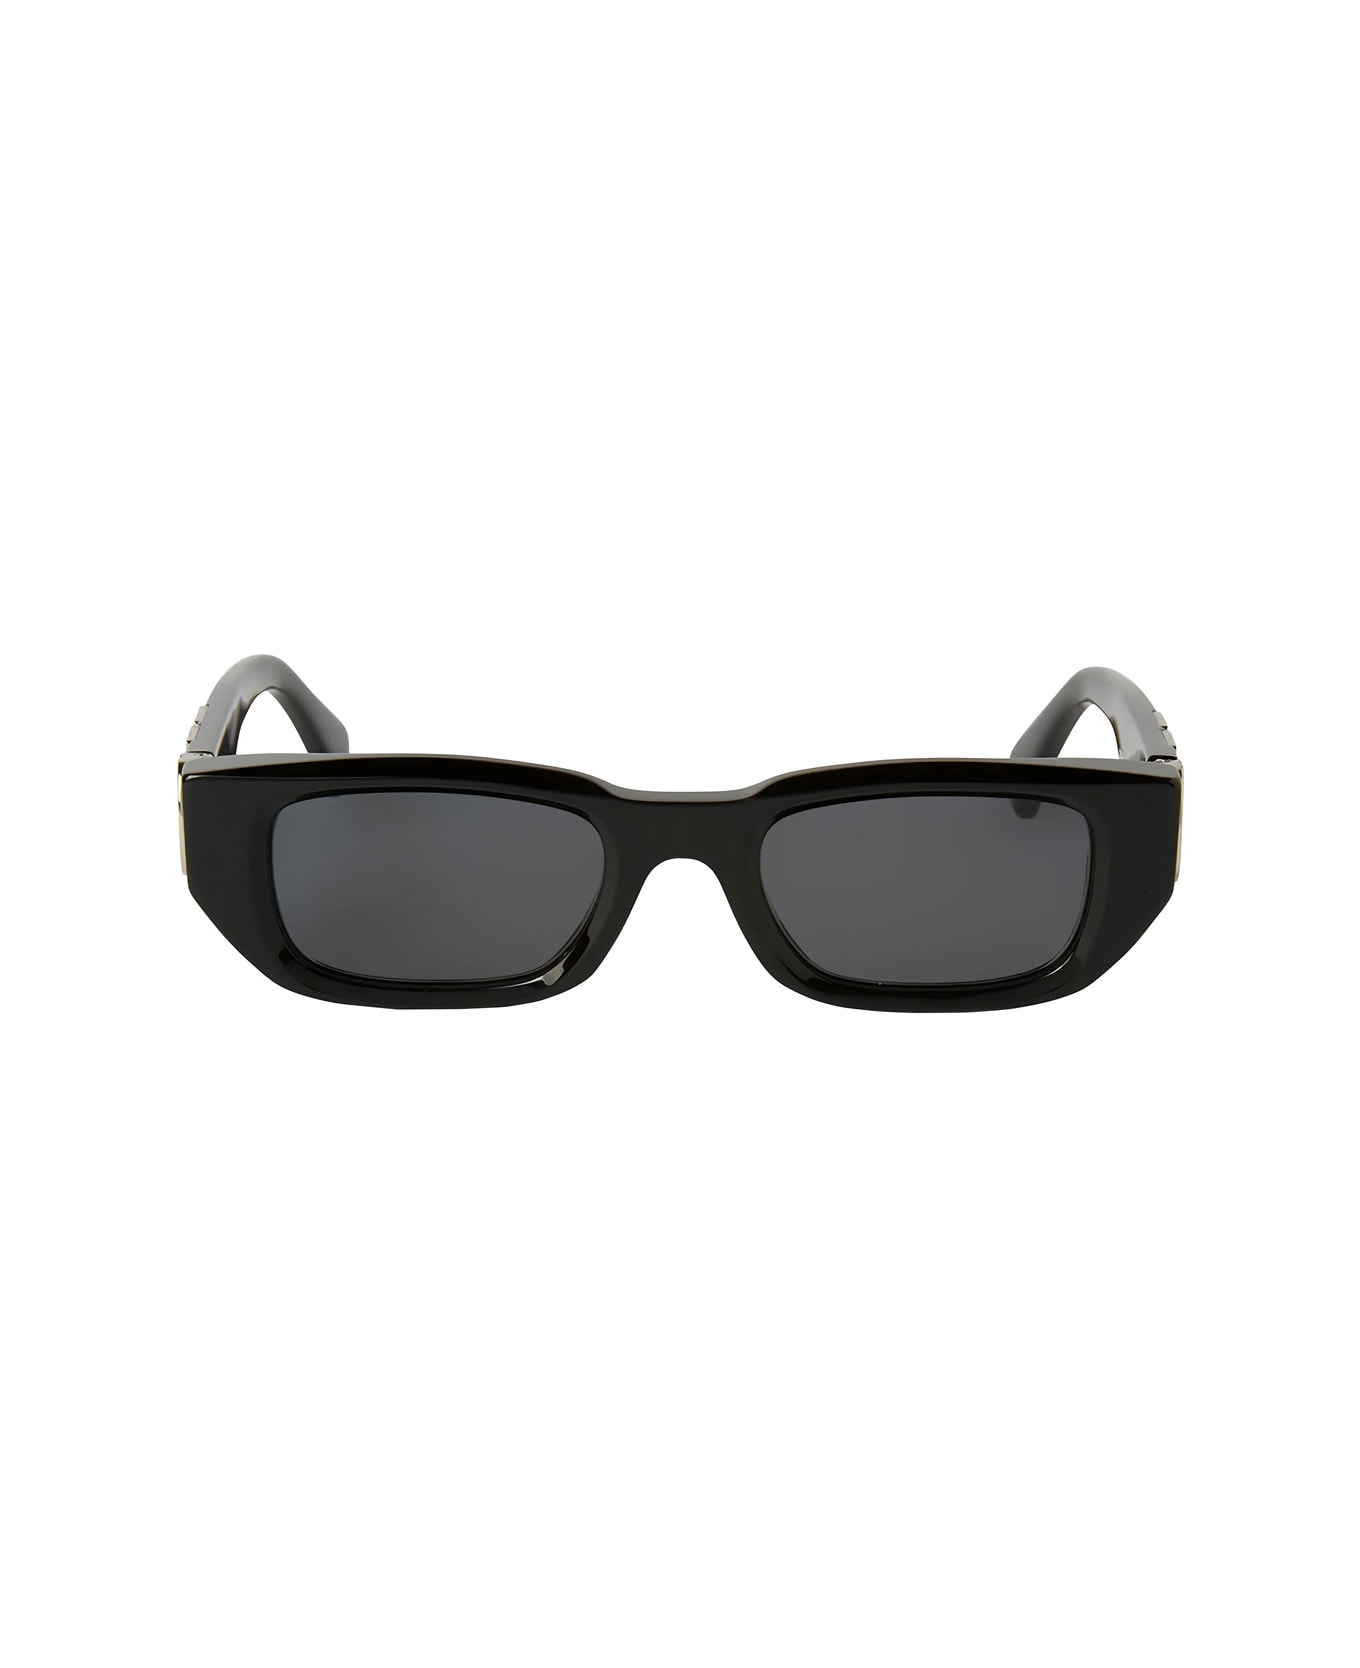 Off-White Oeri124 Fillmore 1007 Black Dark Grey Sunglasses - Nero